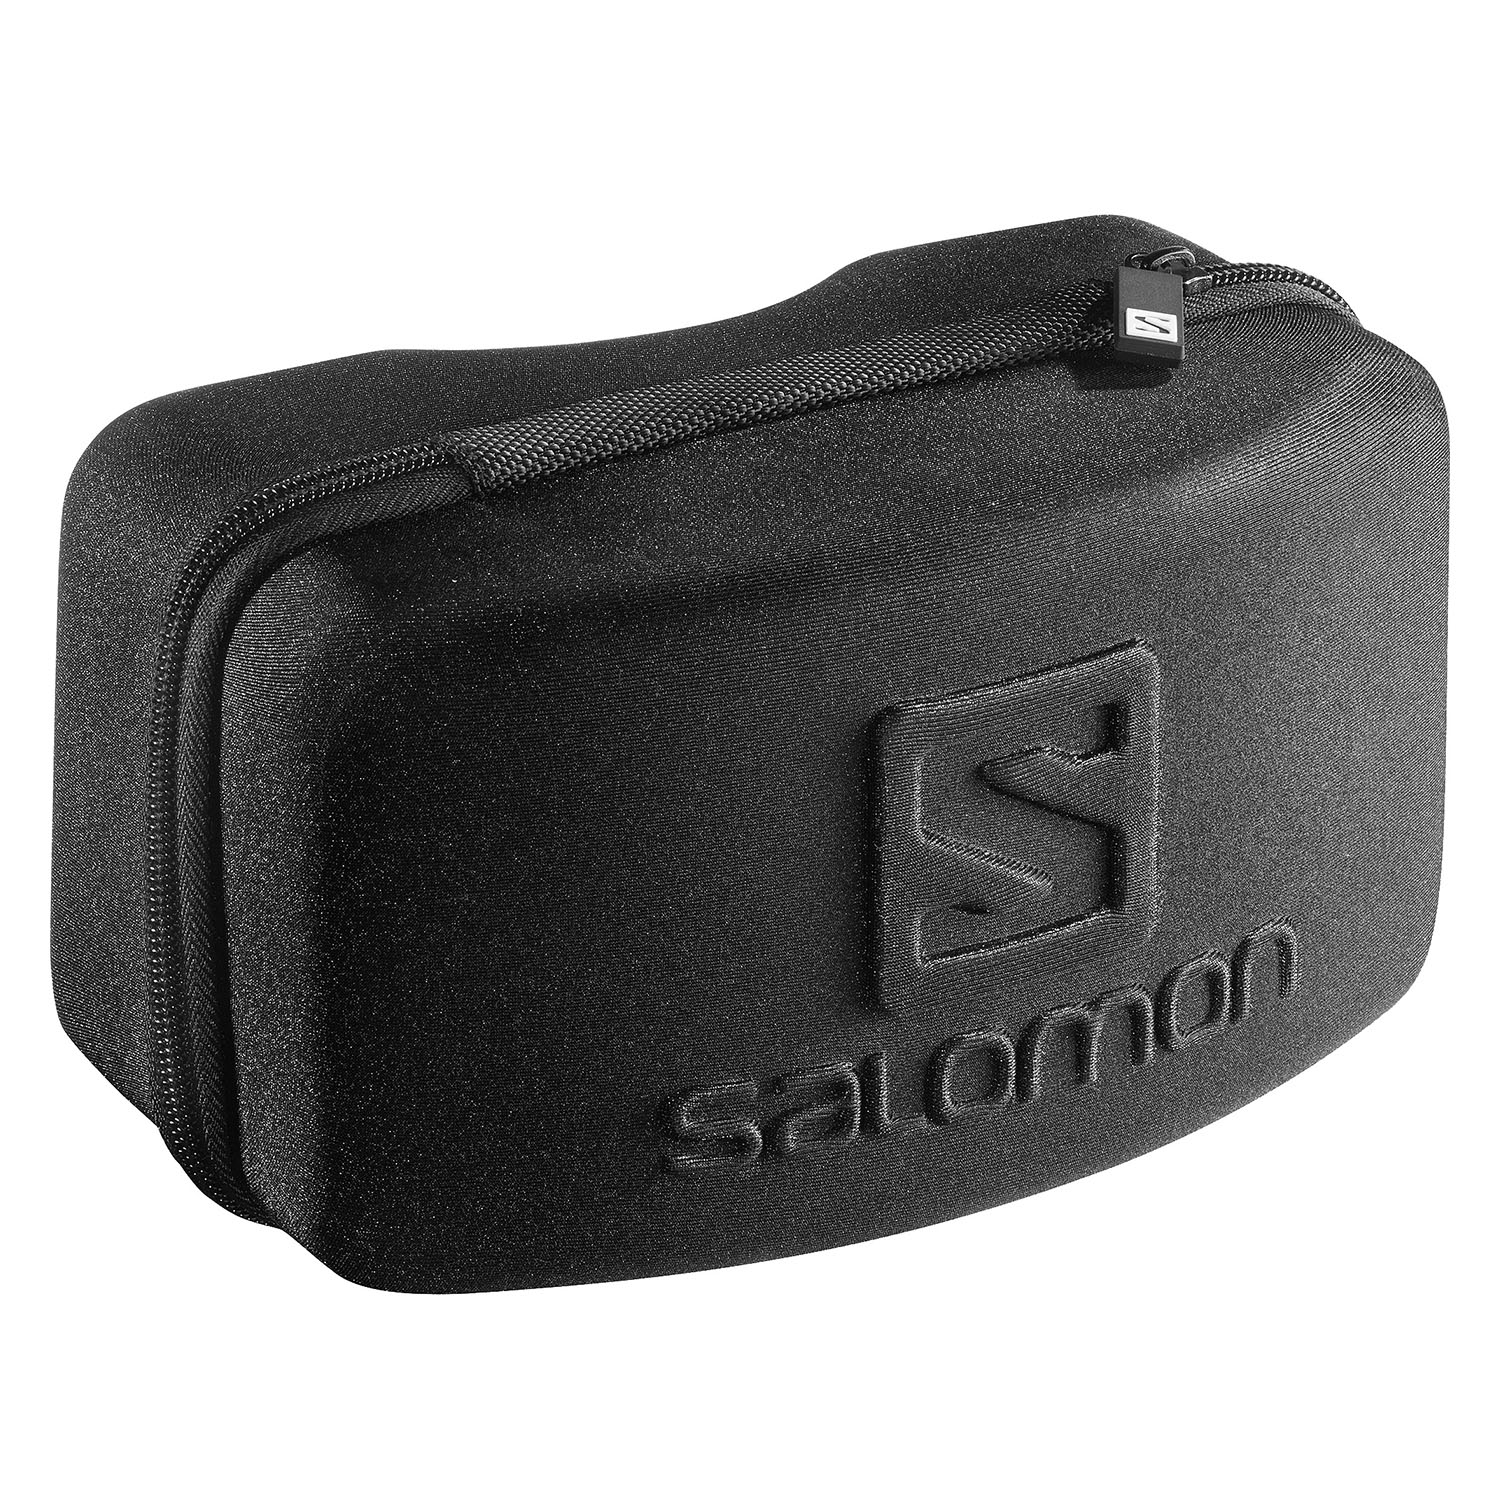 Очки горнолыжные SALOMON Radium Pro Black